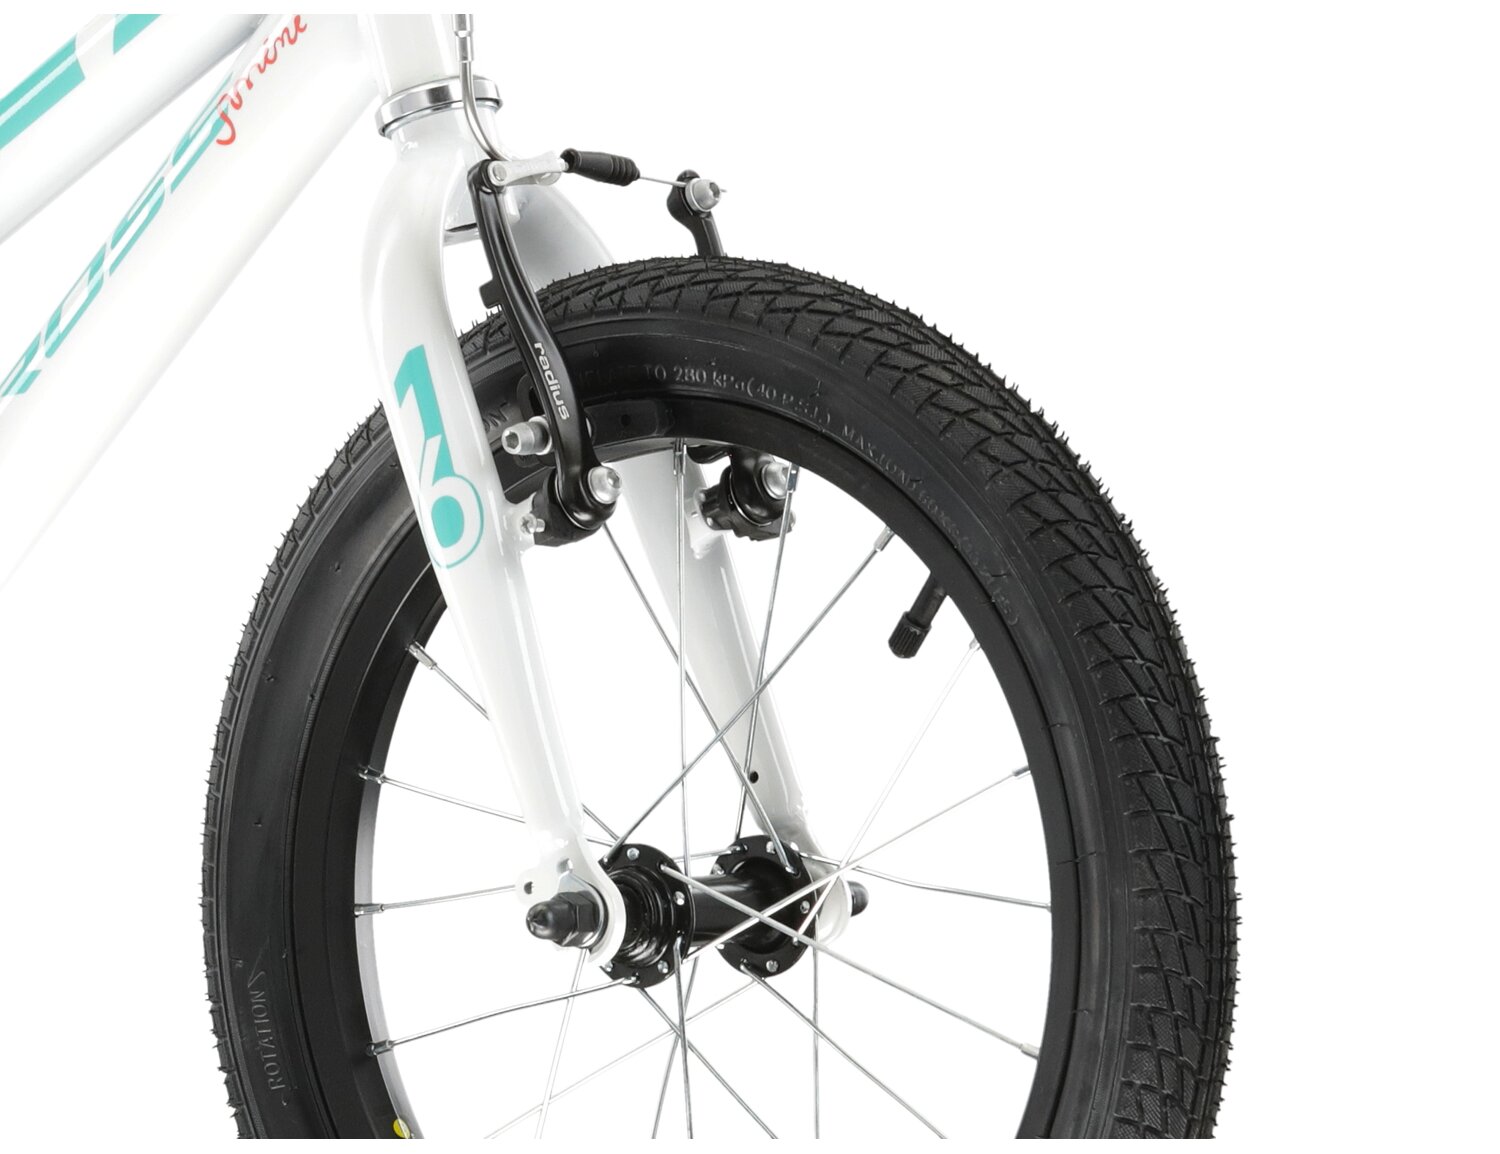  Stalowa rama, sztywny widelec, opona 16 cali i hamulce v-brake w rowerze dziecięcym KROSS Mini 3.0 